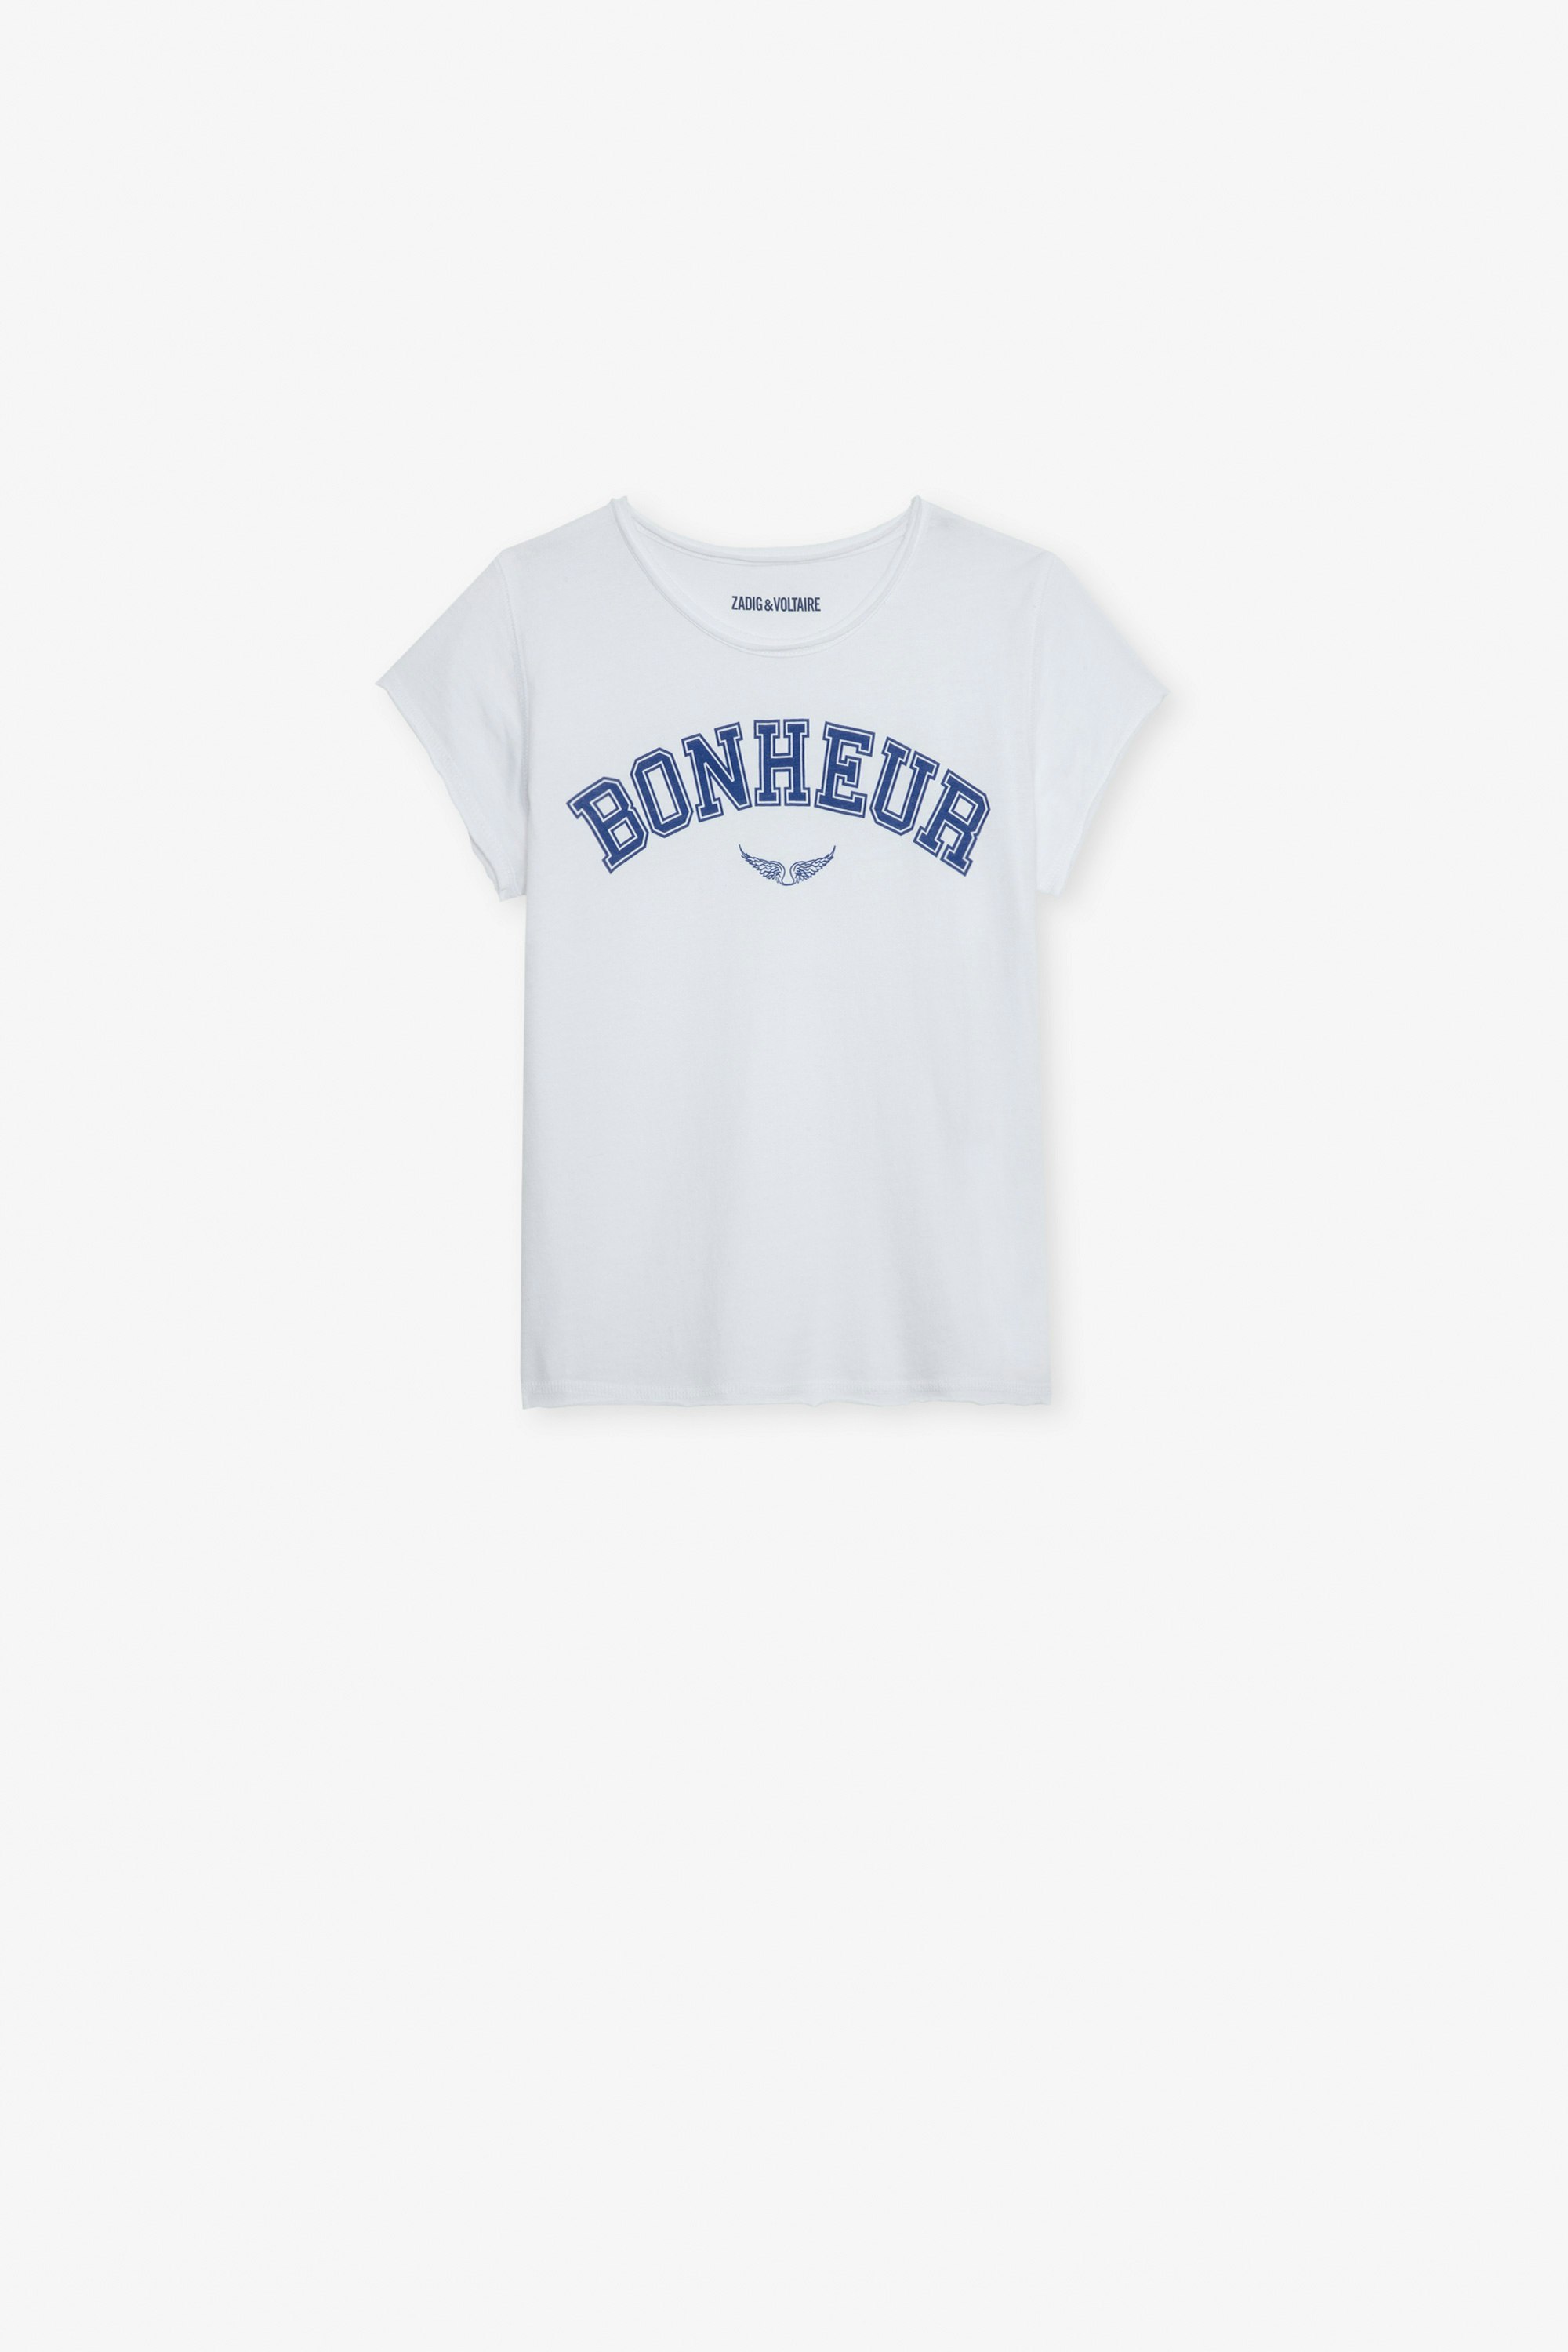 T-shirt Amber Fille - T-shirt à manches courtes en jersey coton blanc orné du message "Bonheur" fille.